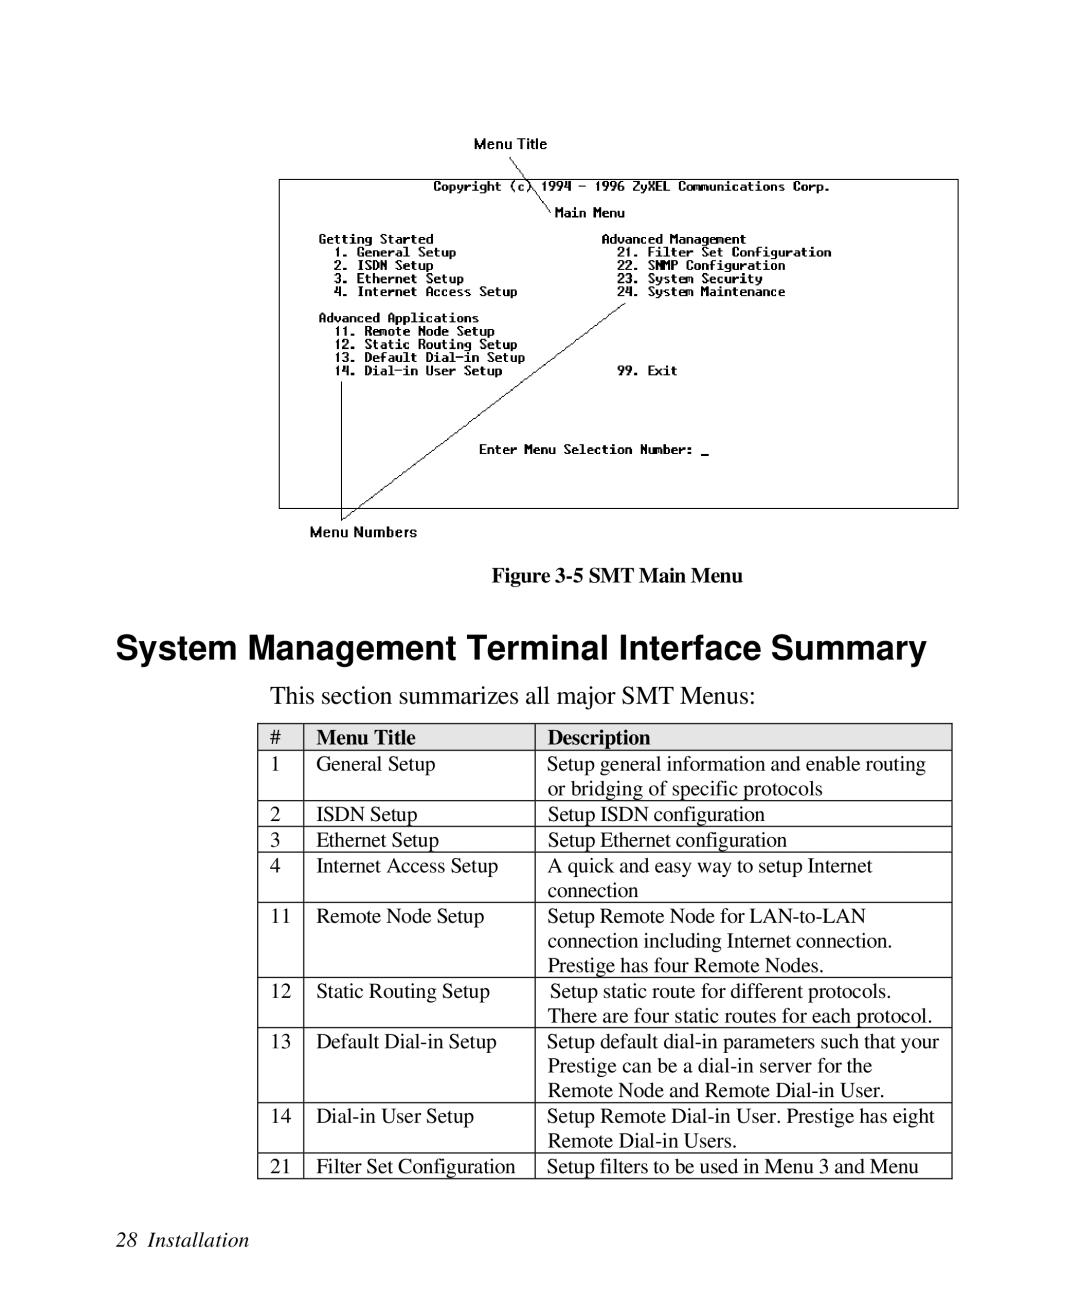 ZyXEL Communications Prestige 128 System Management Terminal Interface Summary, 5 SMT Main Menu, Menu Title, Description 